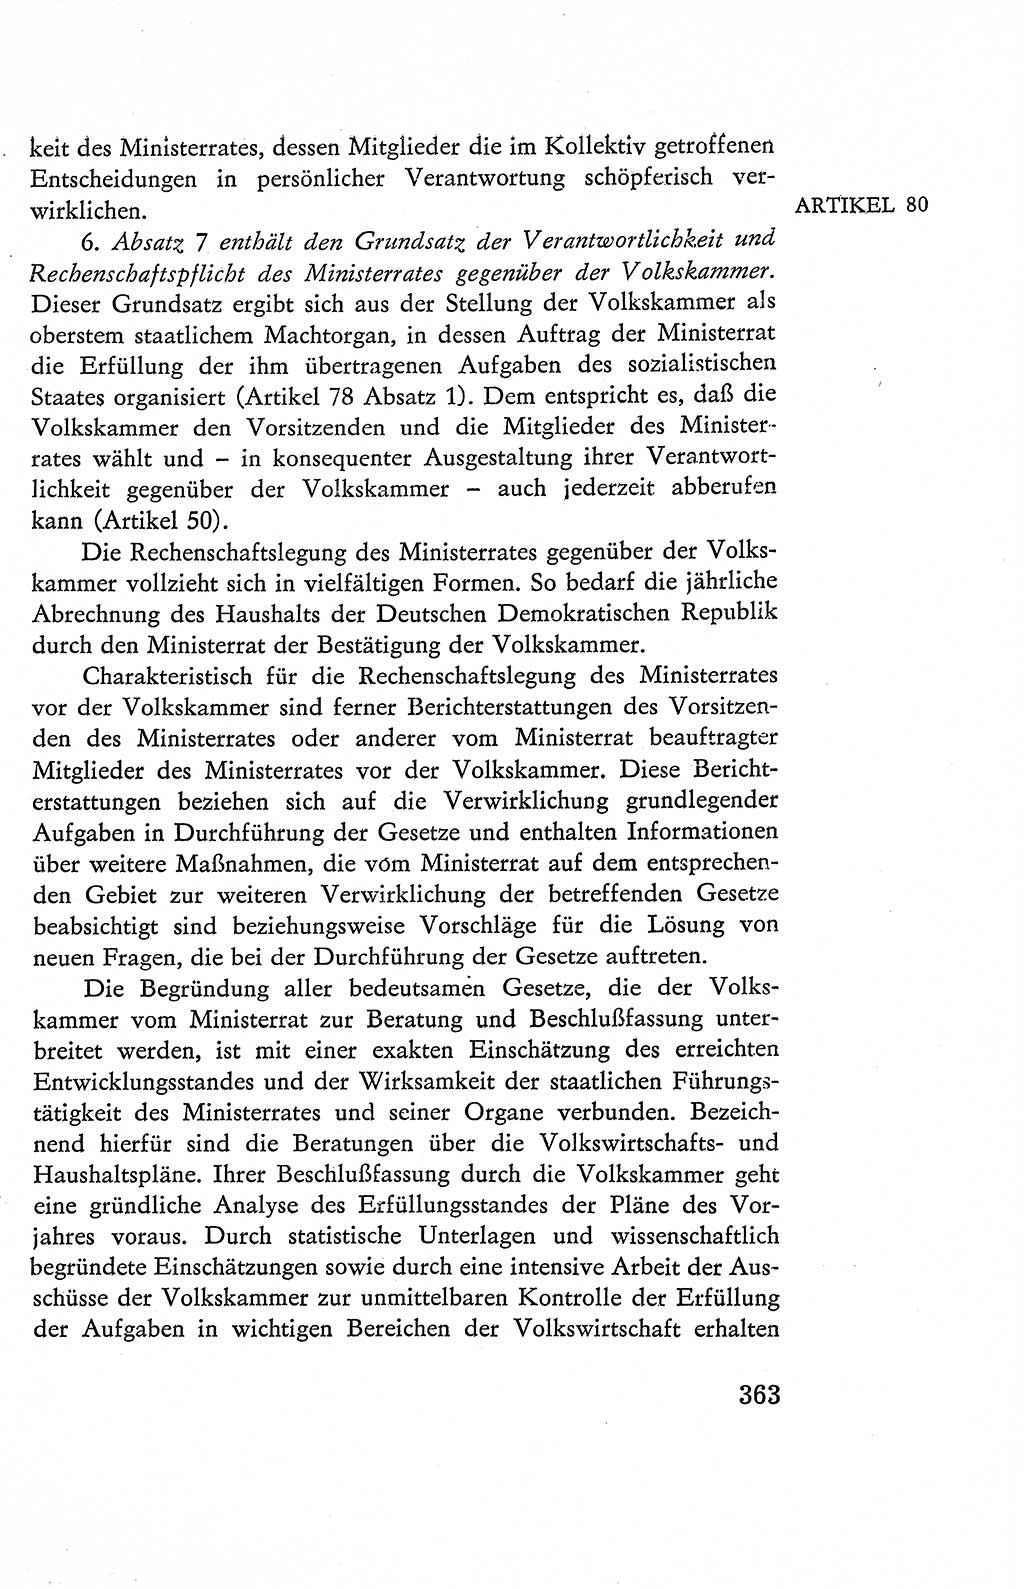 Verfassung der Deutschen Demokratischen Republik (DDR), Dokumente, Kommentar 1969, Band 2, Seite 363 (Verf. DDR Dok. Komm. 1969, Bd. 2, S. 363)